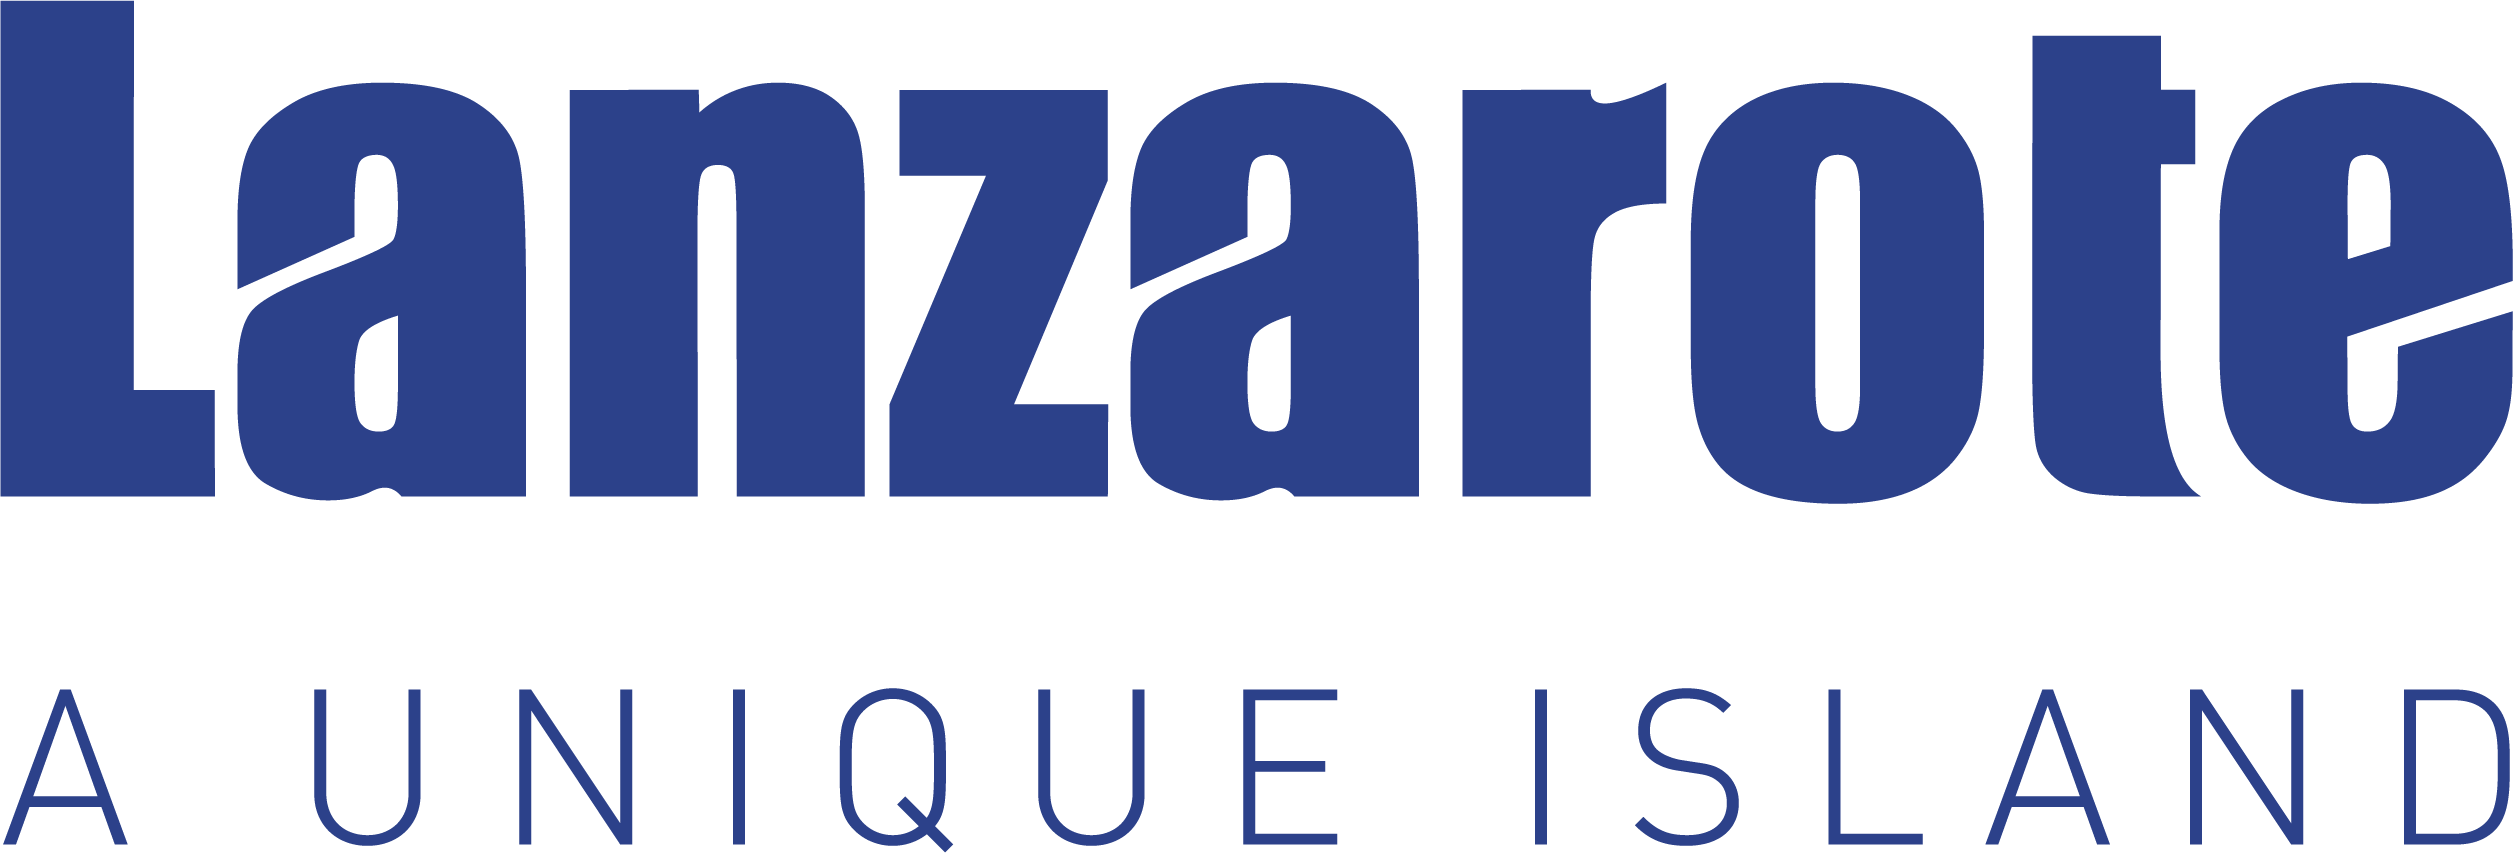 Sponsor Lanzarote A Unique Island